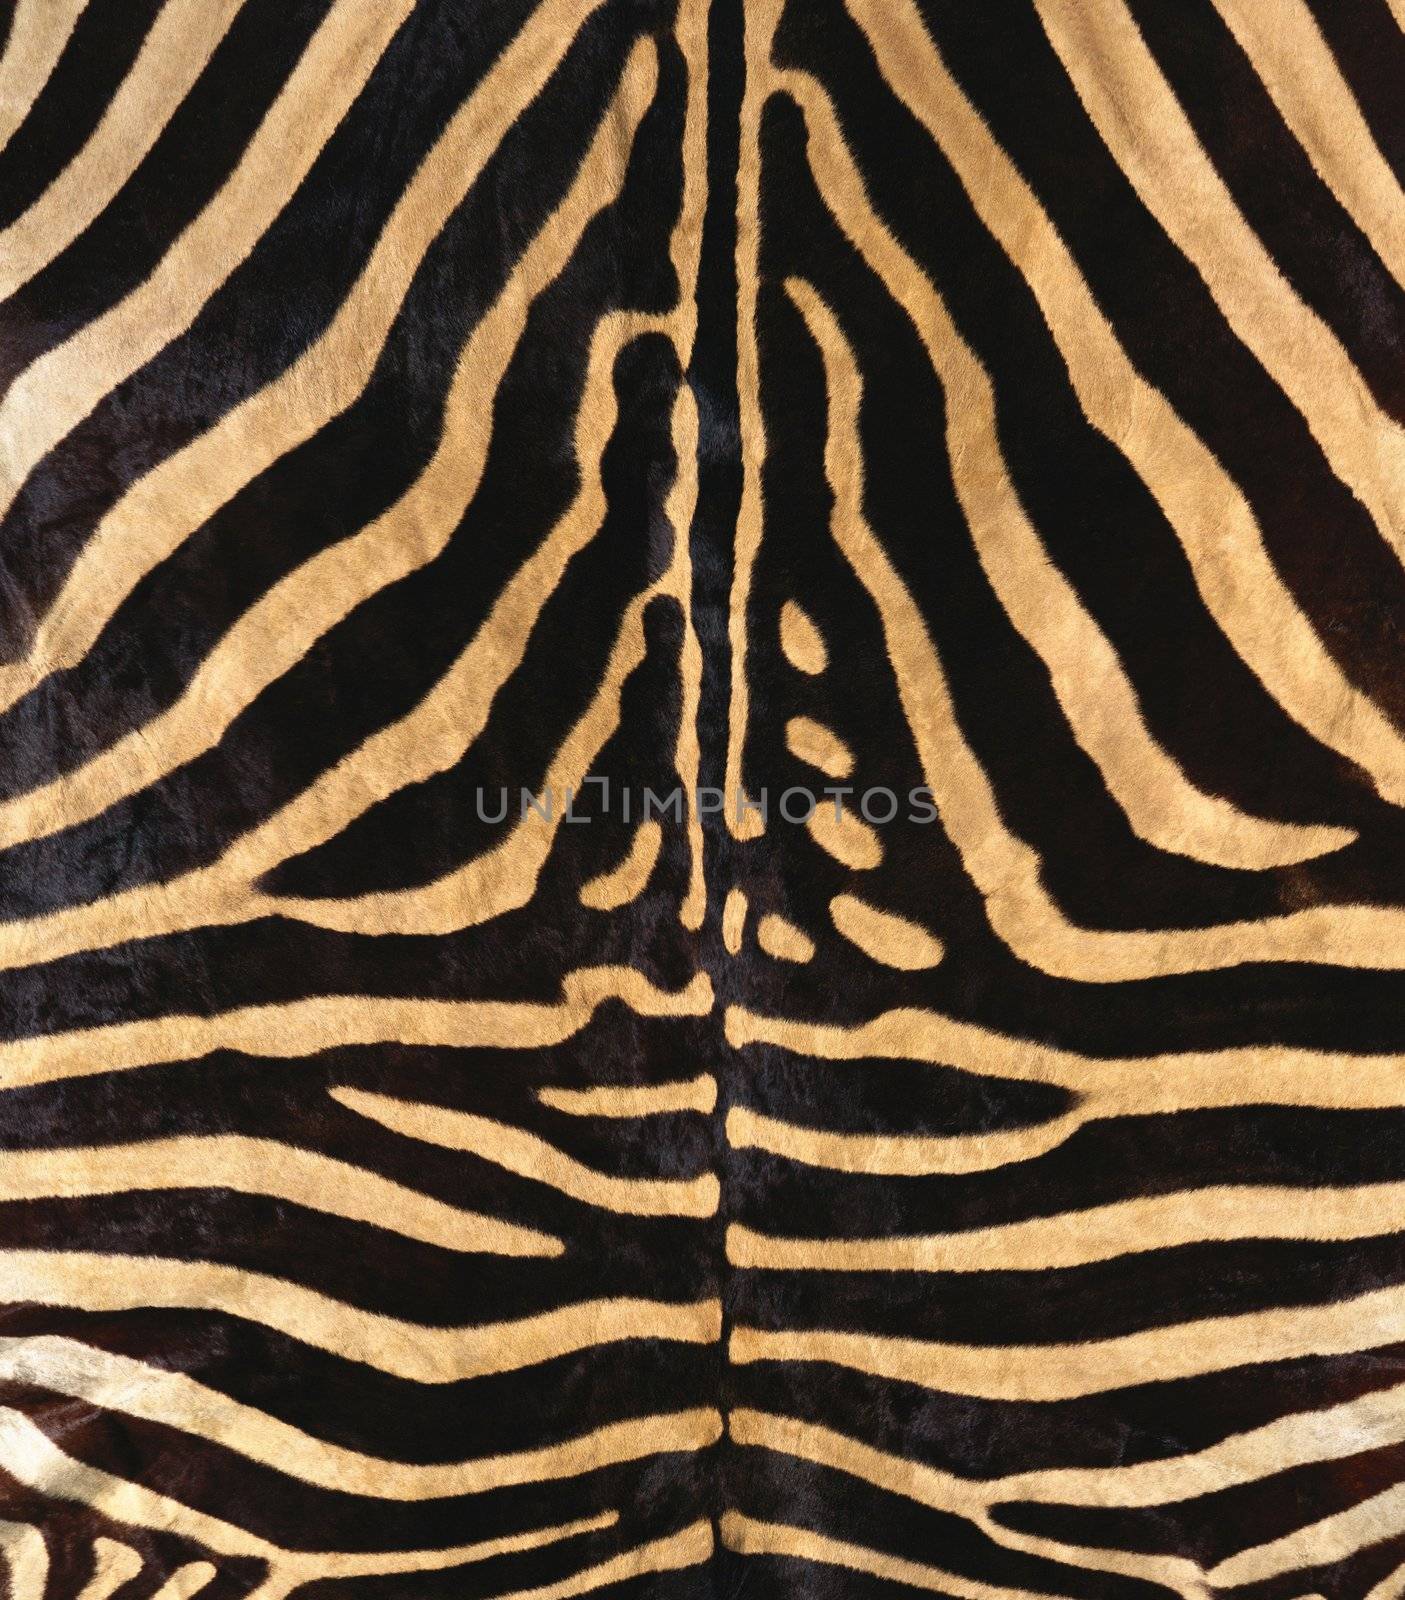 natural zebra fur texture